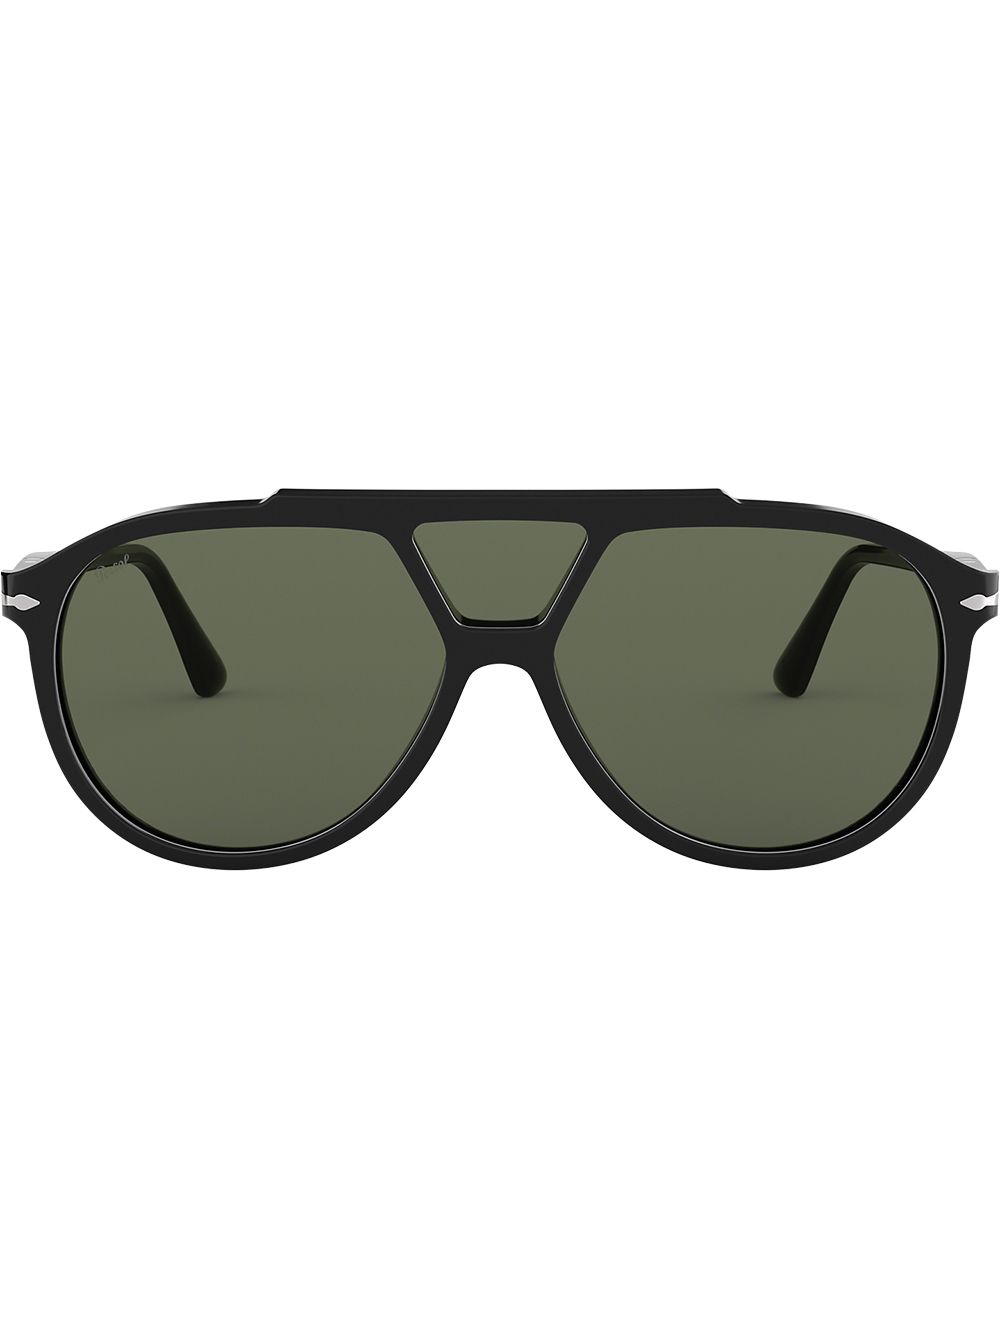 Persol aviator sunglasses - Black von Persol